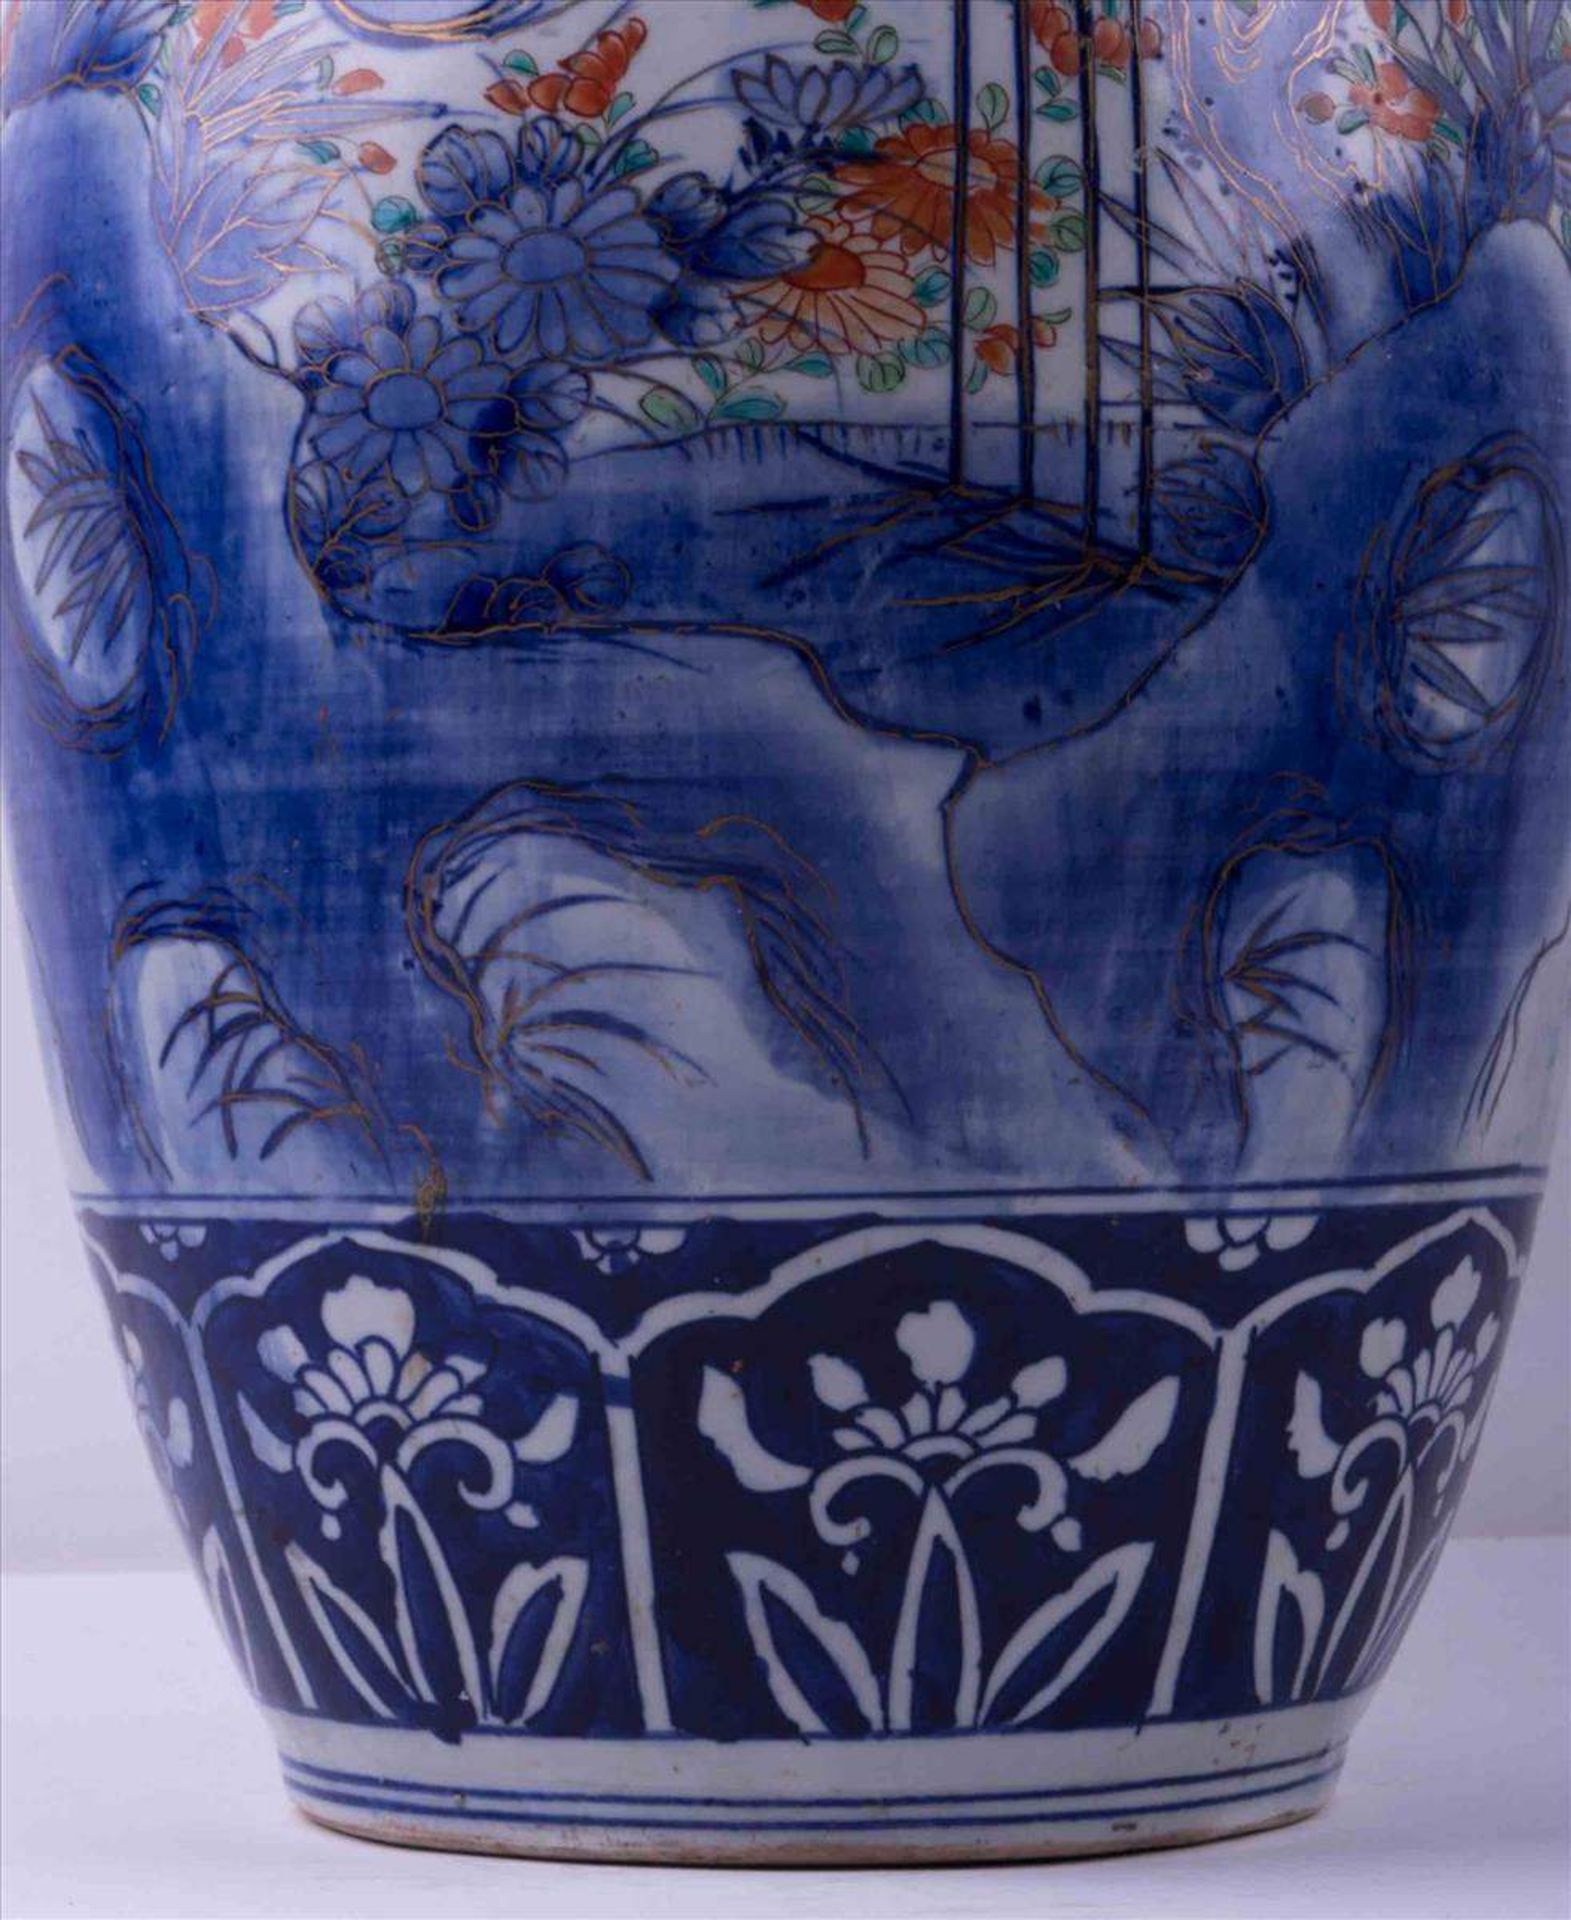 Imari Bodenvase 19. Jhd. / Imari floor-vase, 19th centuryfarbig- und goldstaffiert, mit floralem - - Bild 3 aus 4